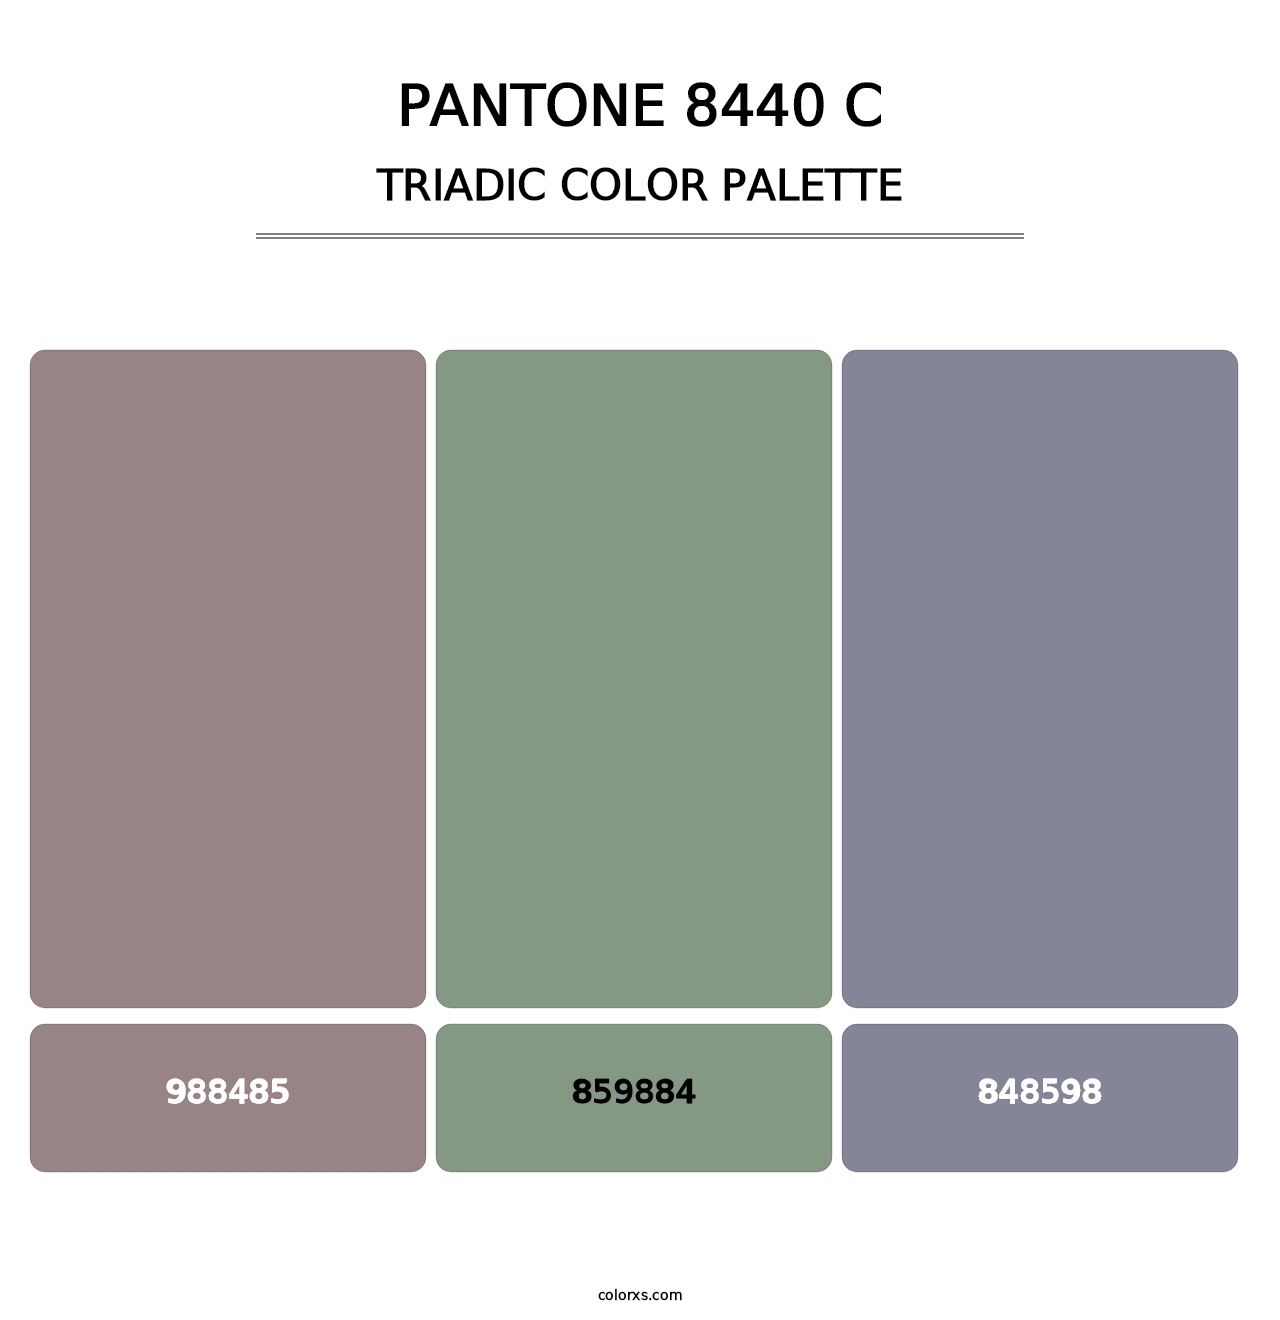 PANTONE 8440 C - Triadic Color Palette